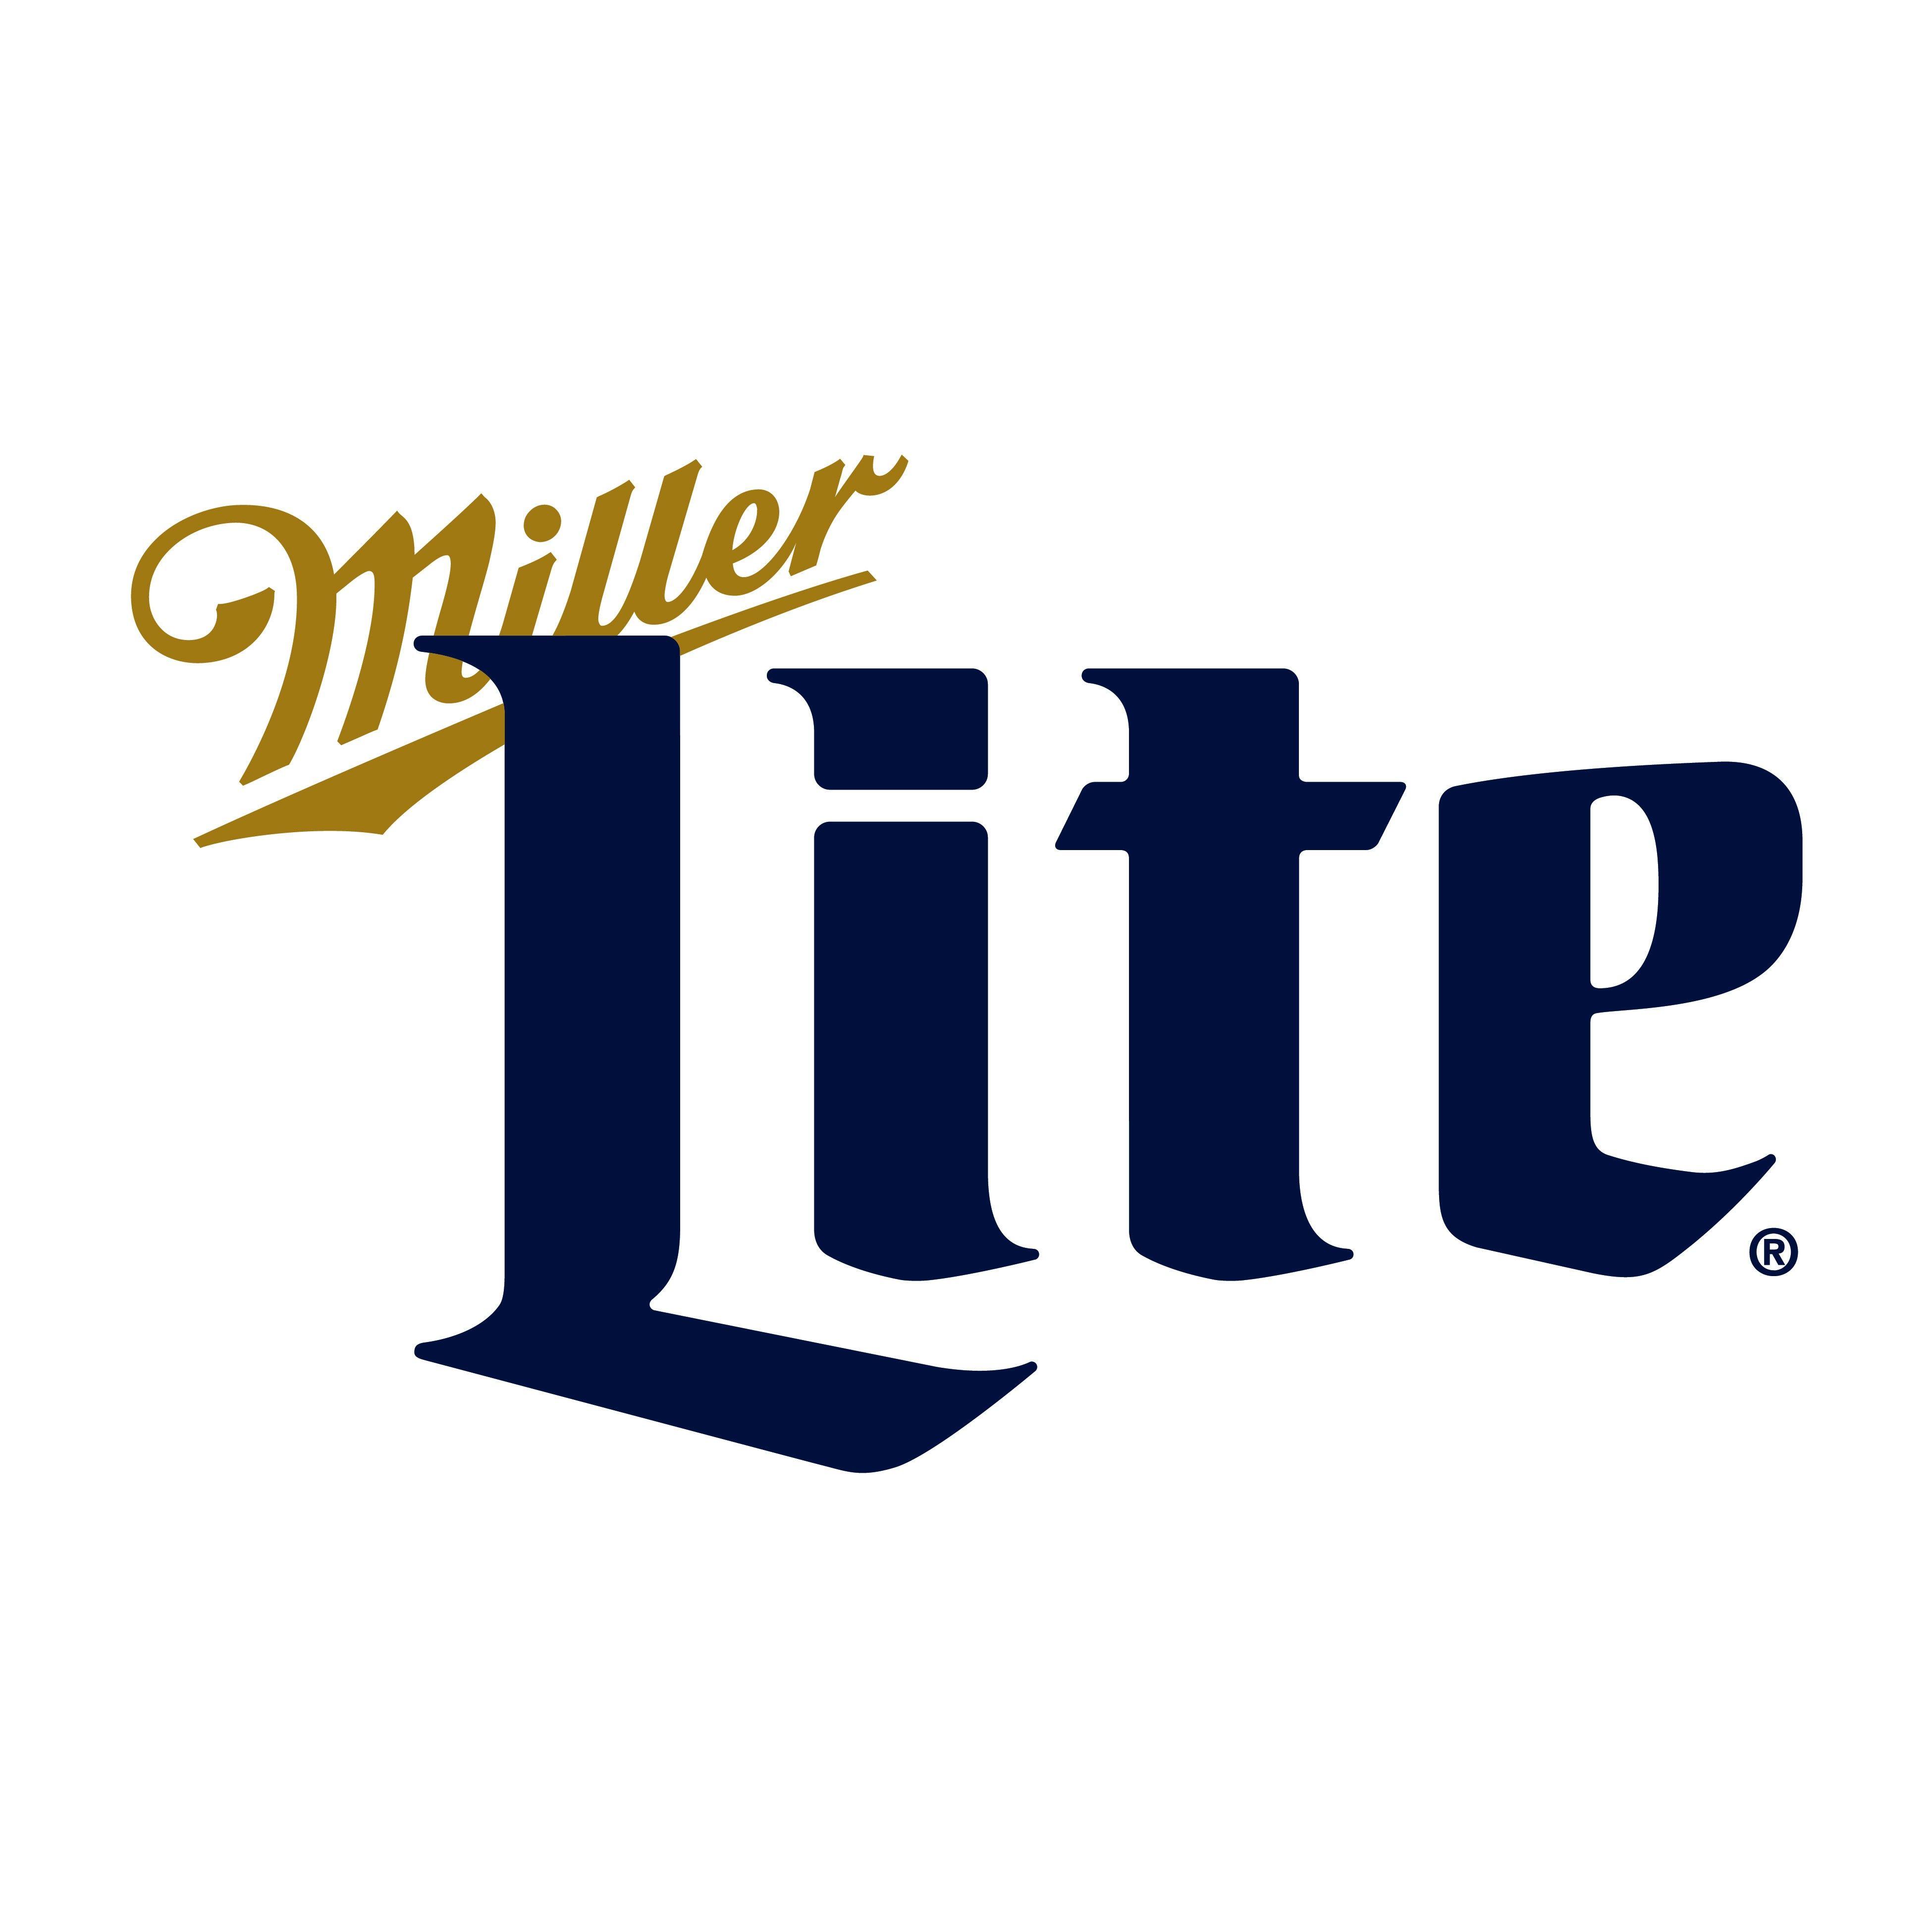 Miller Lite Logo - Miller Lite logo